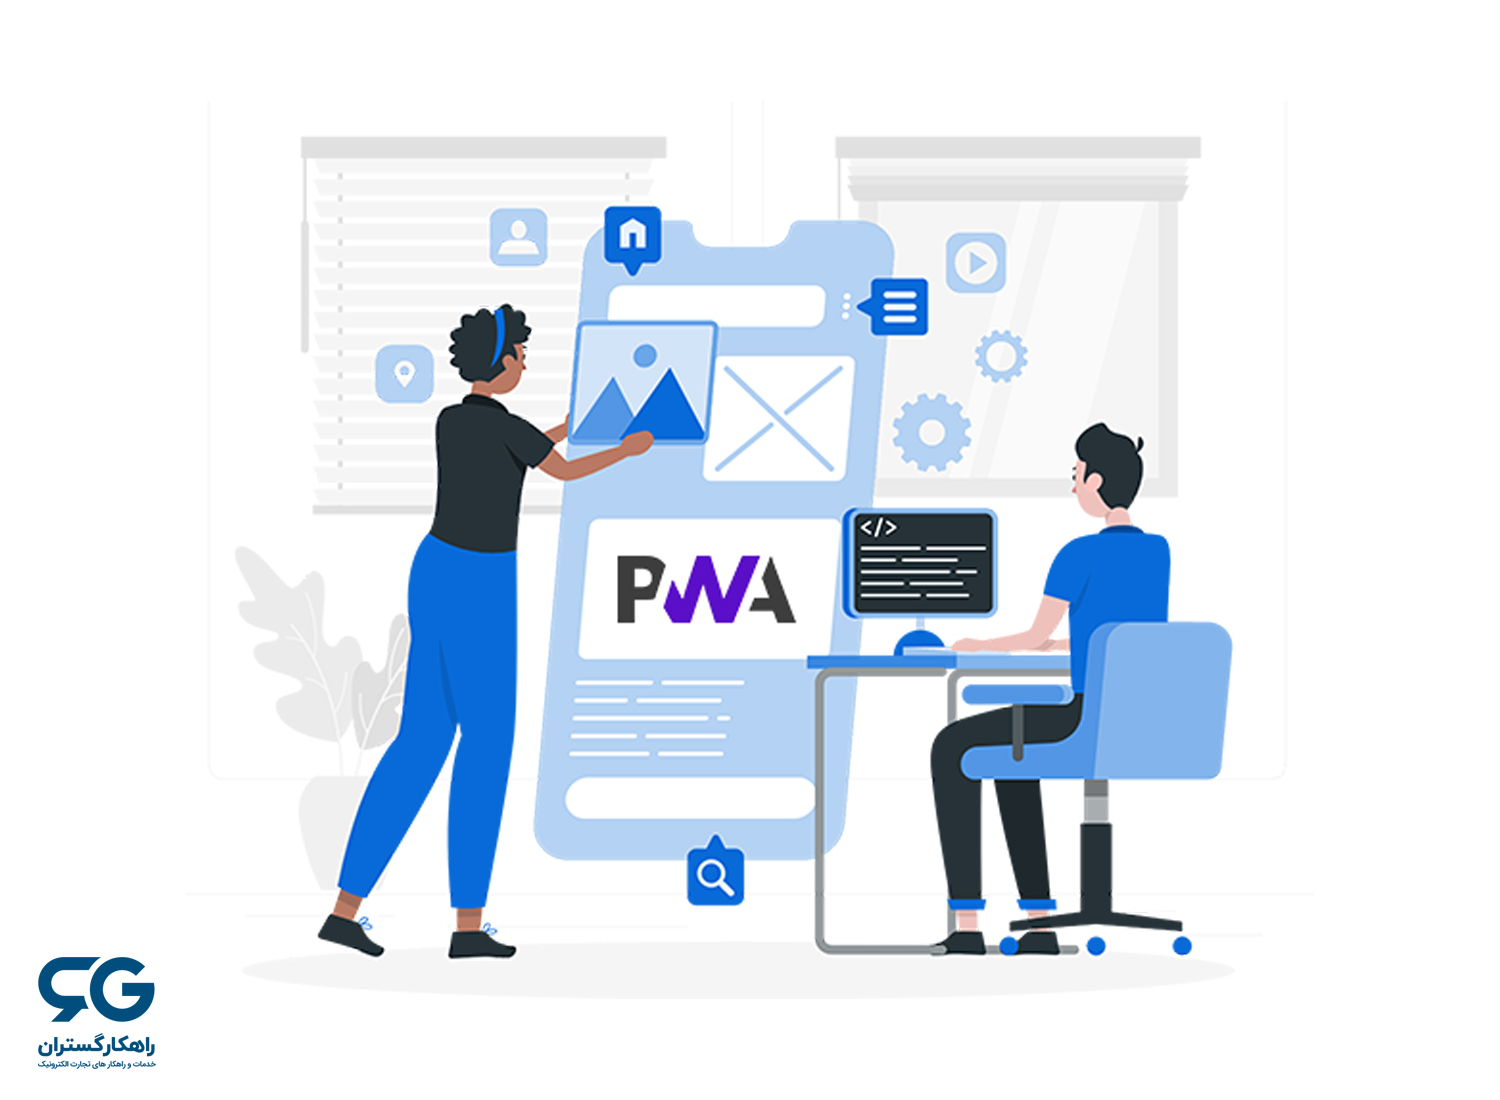 ویژگی های وب اپلیکیشن پیش رونده یا PWA چیست؟